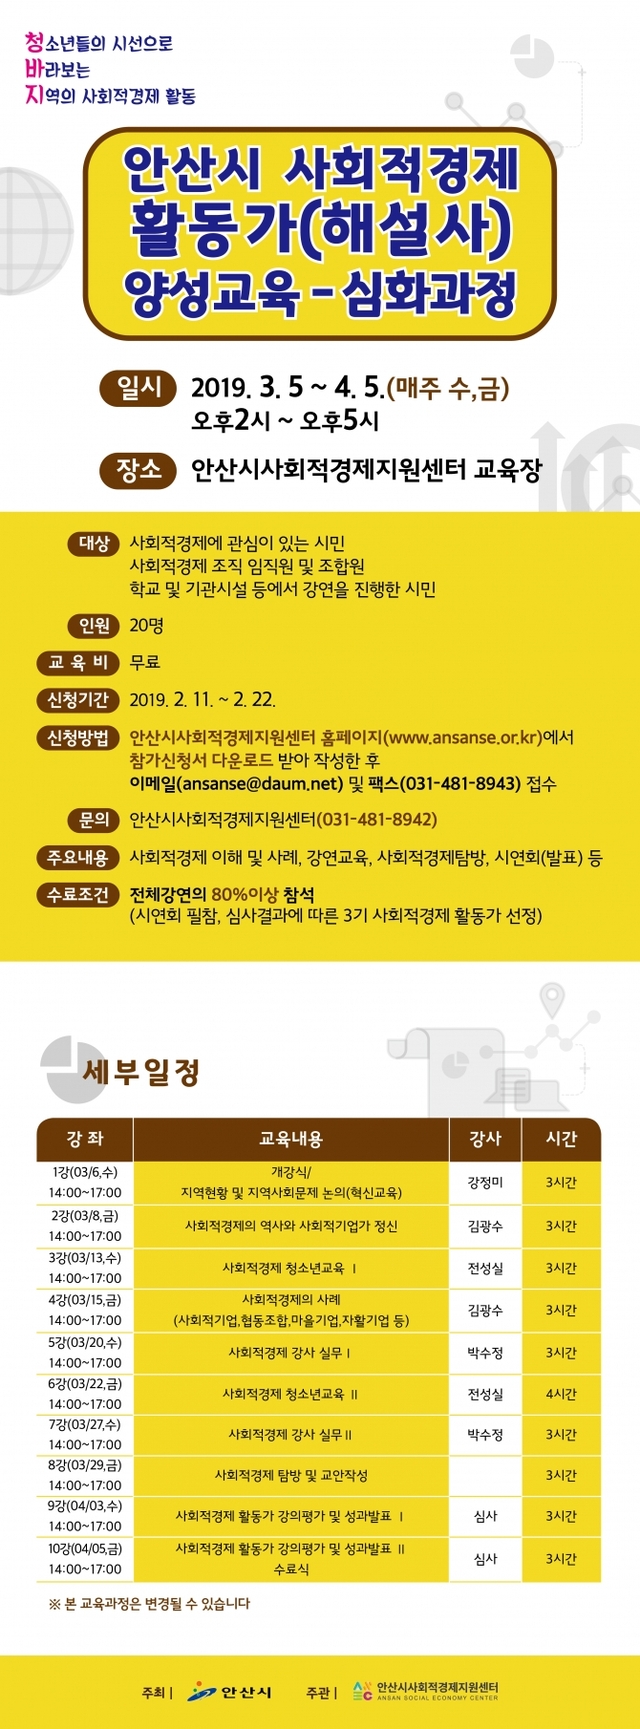 활동가양성교육 웹자보. (제공: 안산시사회적경제지원센터) ⓒ천지일보 2019.2.18